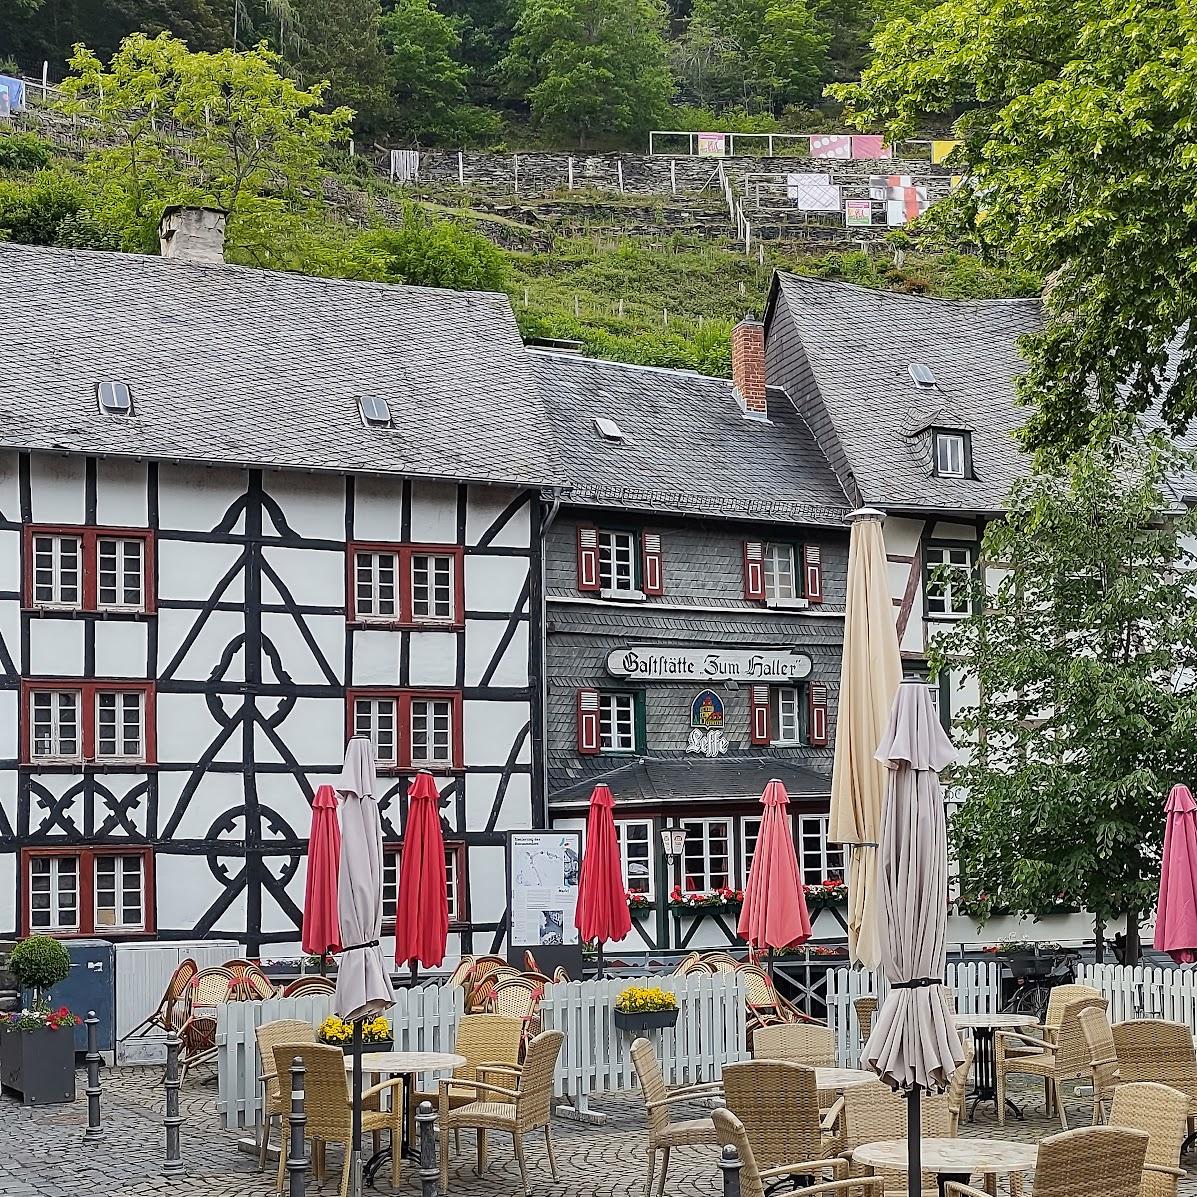 Restaurant "Zum Haller" in Monschau